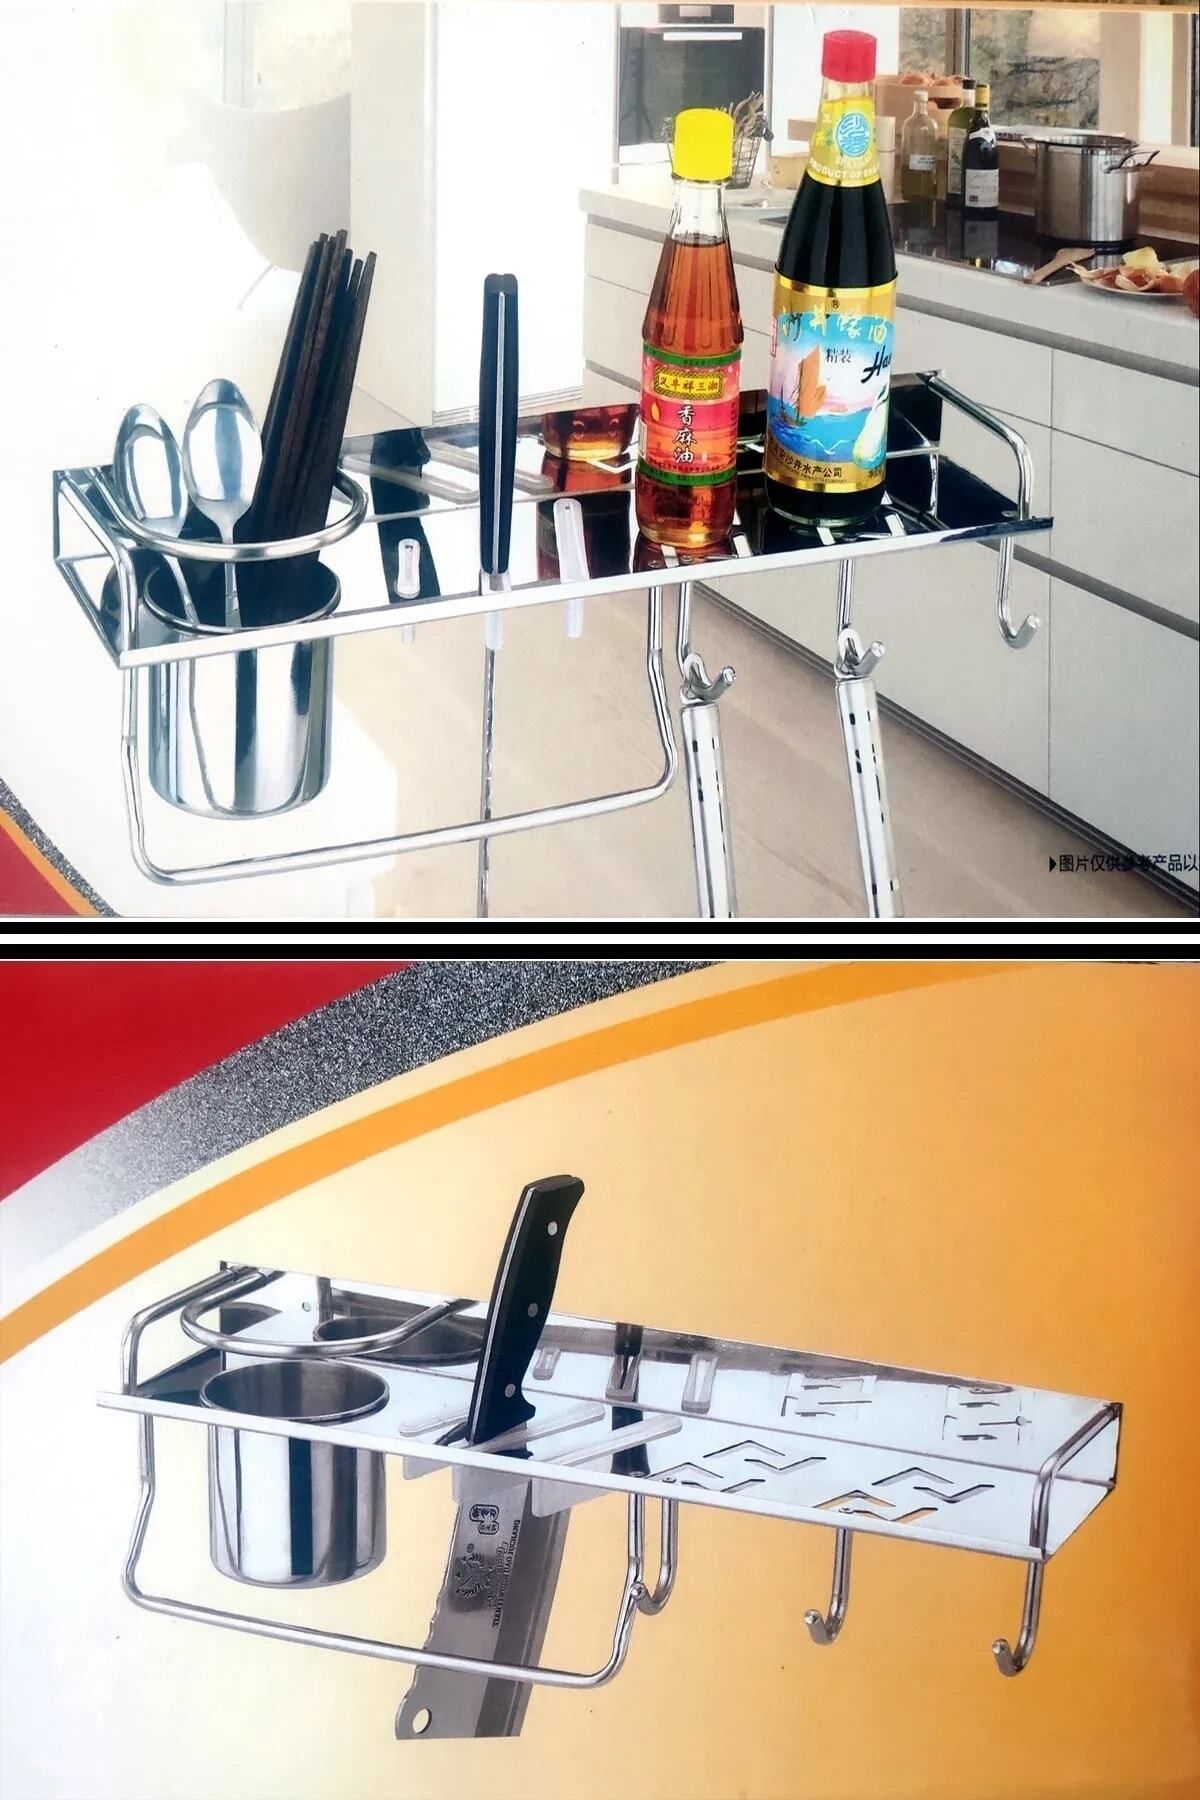 Bundeba Çelik Mutfak Rafı Dekoratif Metal Mutfak Tezgah Raf Bardak Havlu Askısı Bıçaklık Düzenleyici Raf